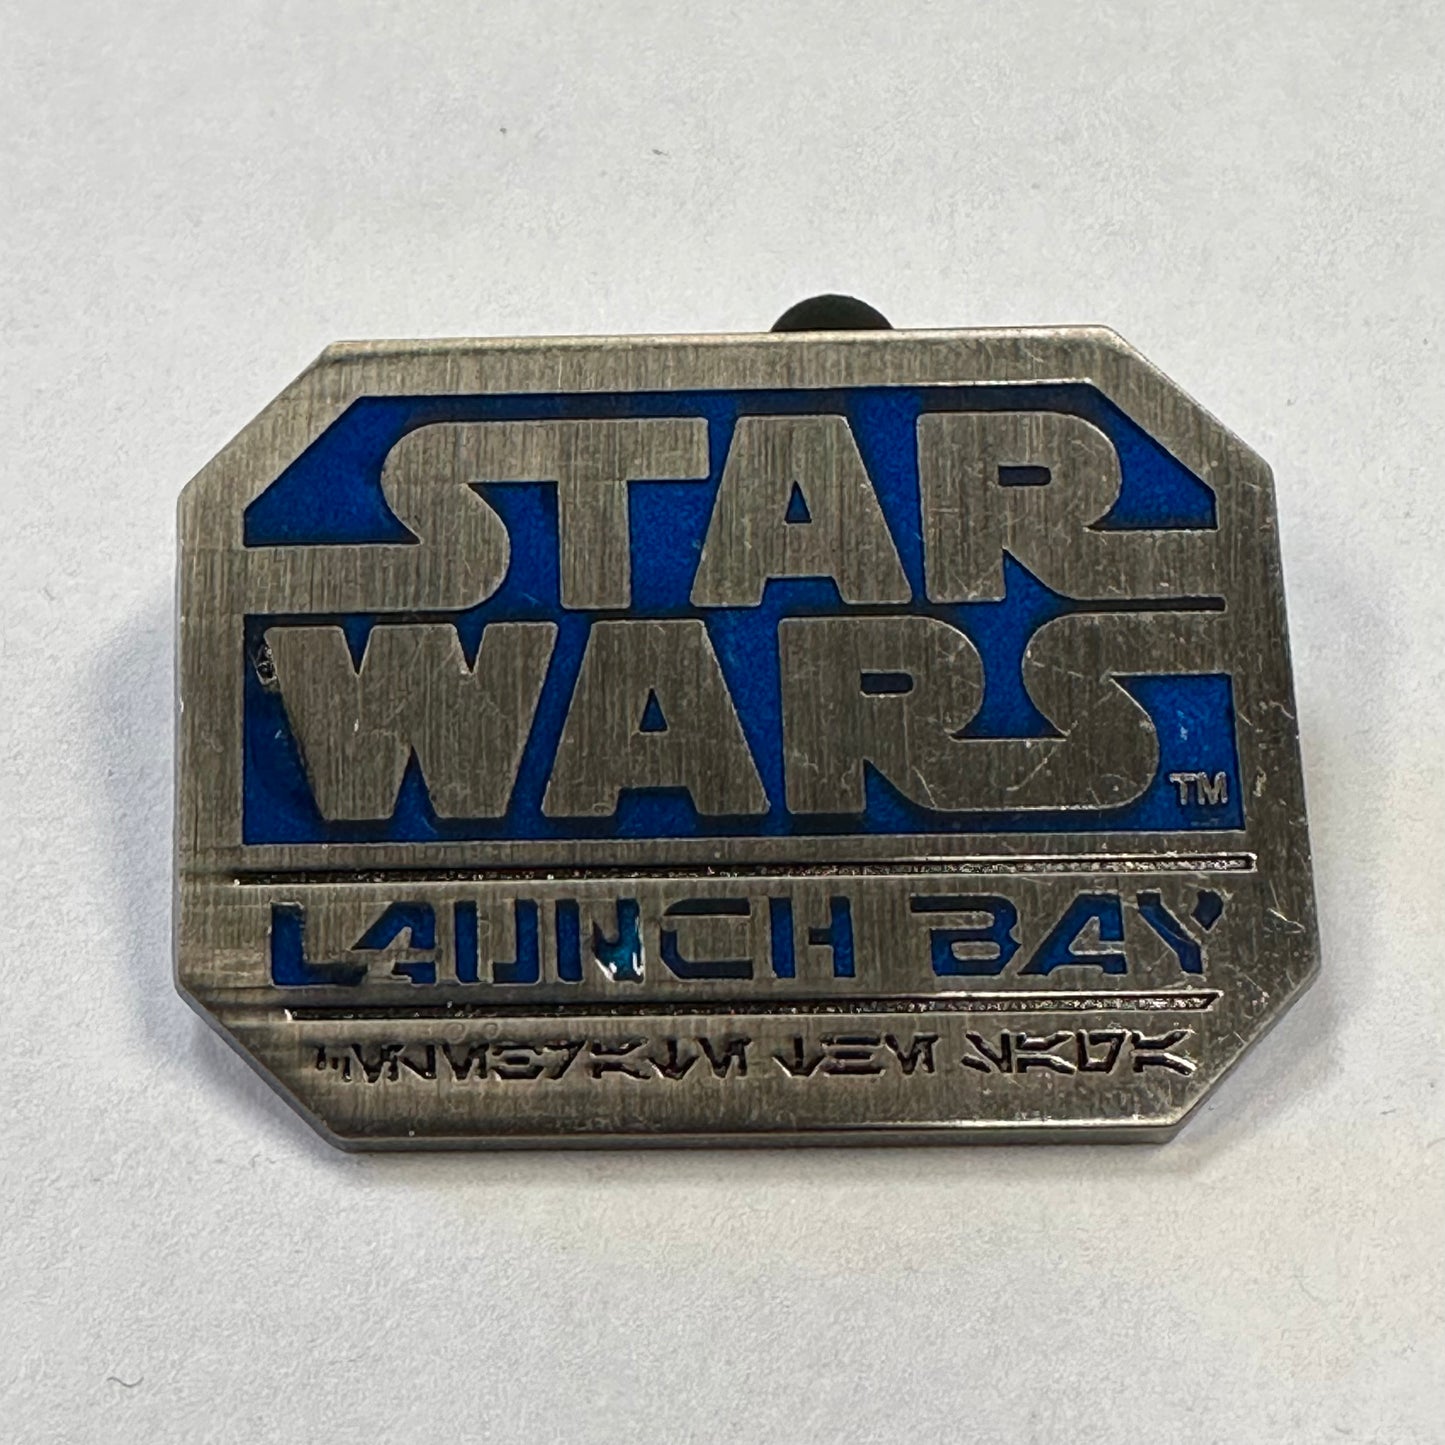 Star Wars Launch Bay Pin